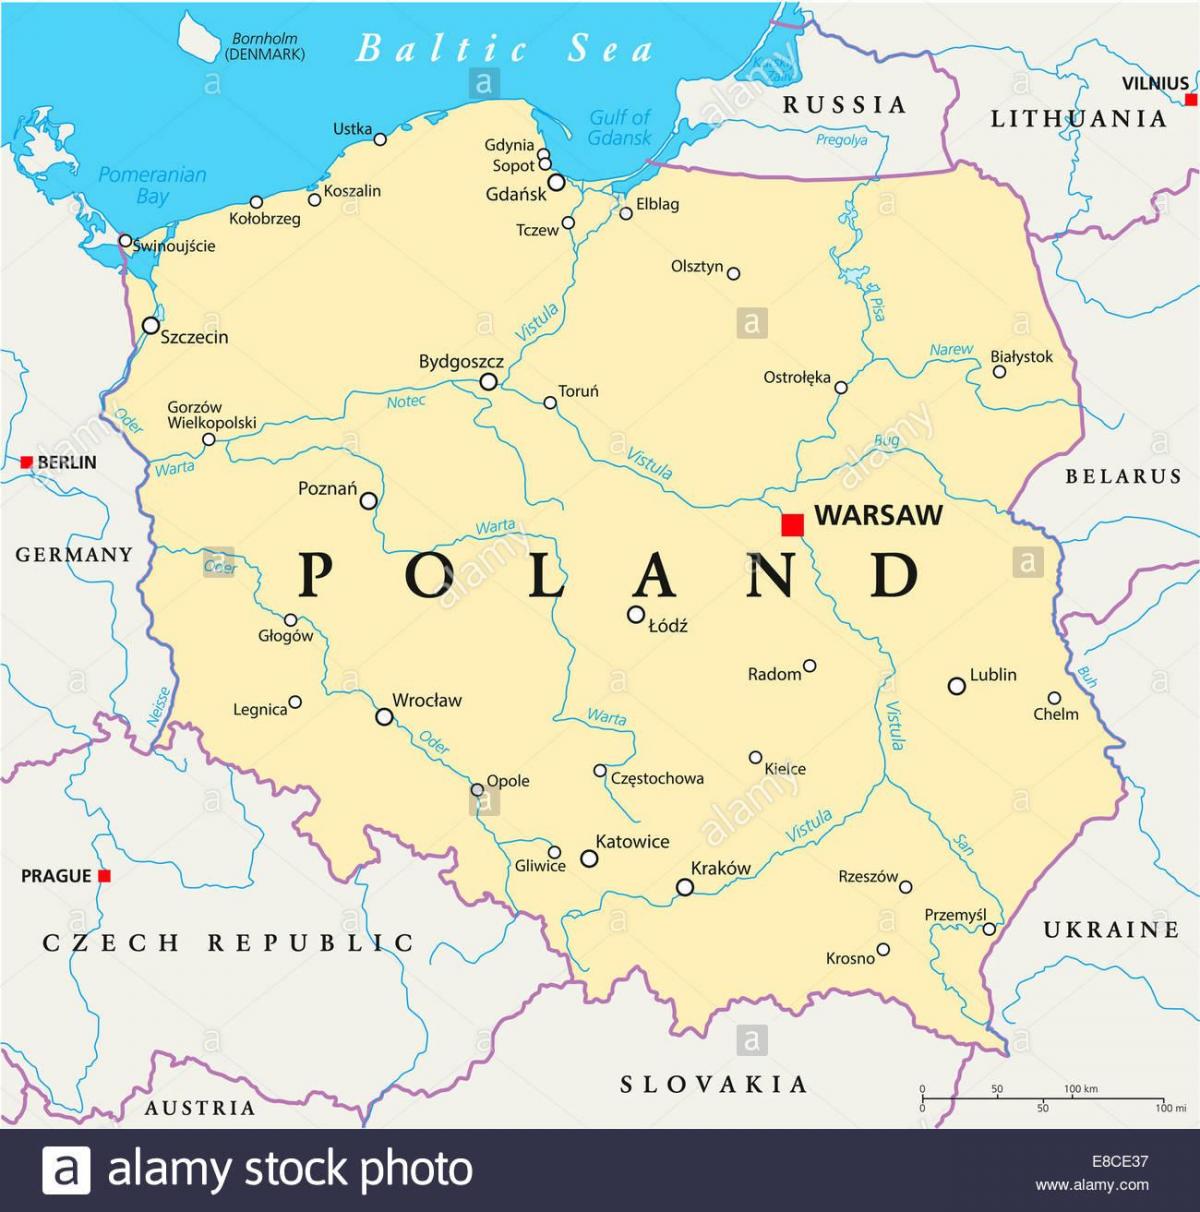 Warsawa lokasi pada peta dunia